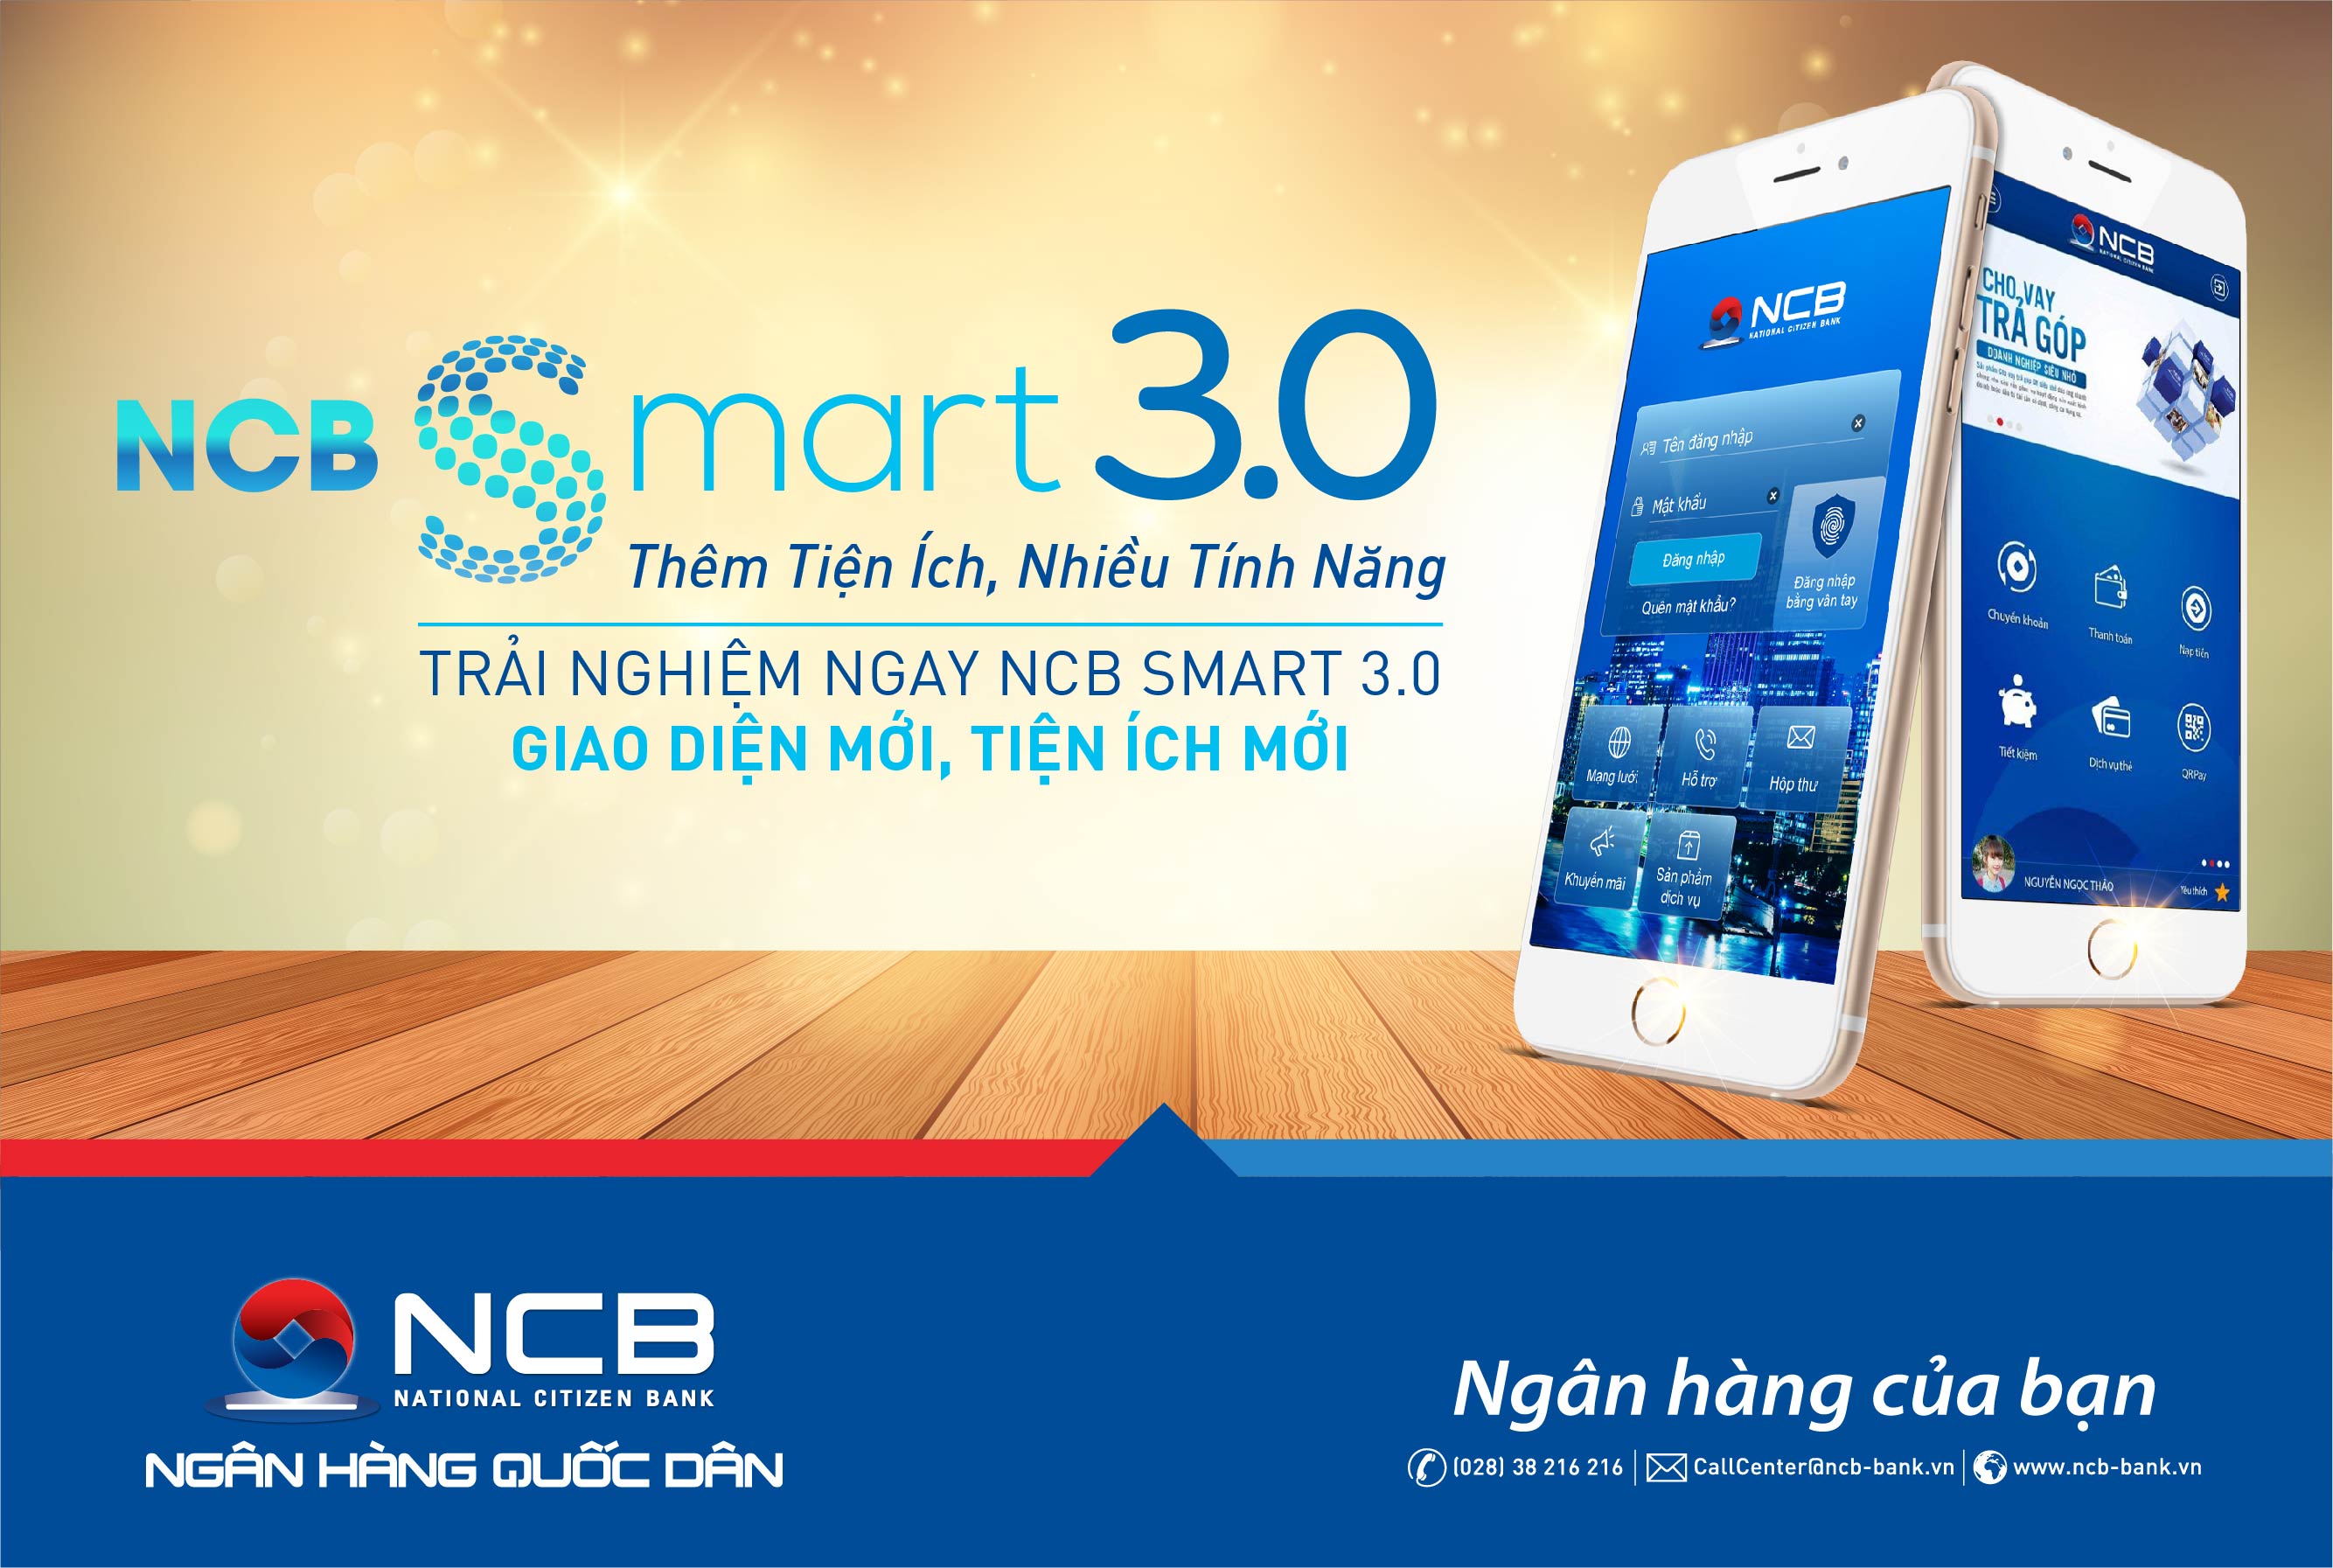 NCB Smart 3.0 Thêm tiện ích – Nhiều tính năng